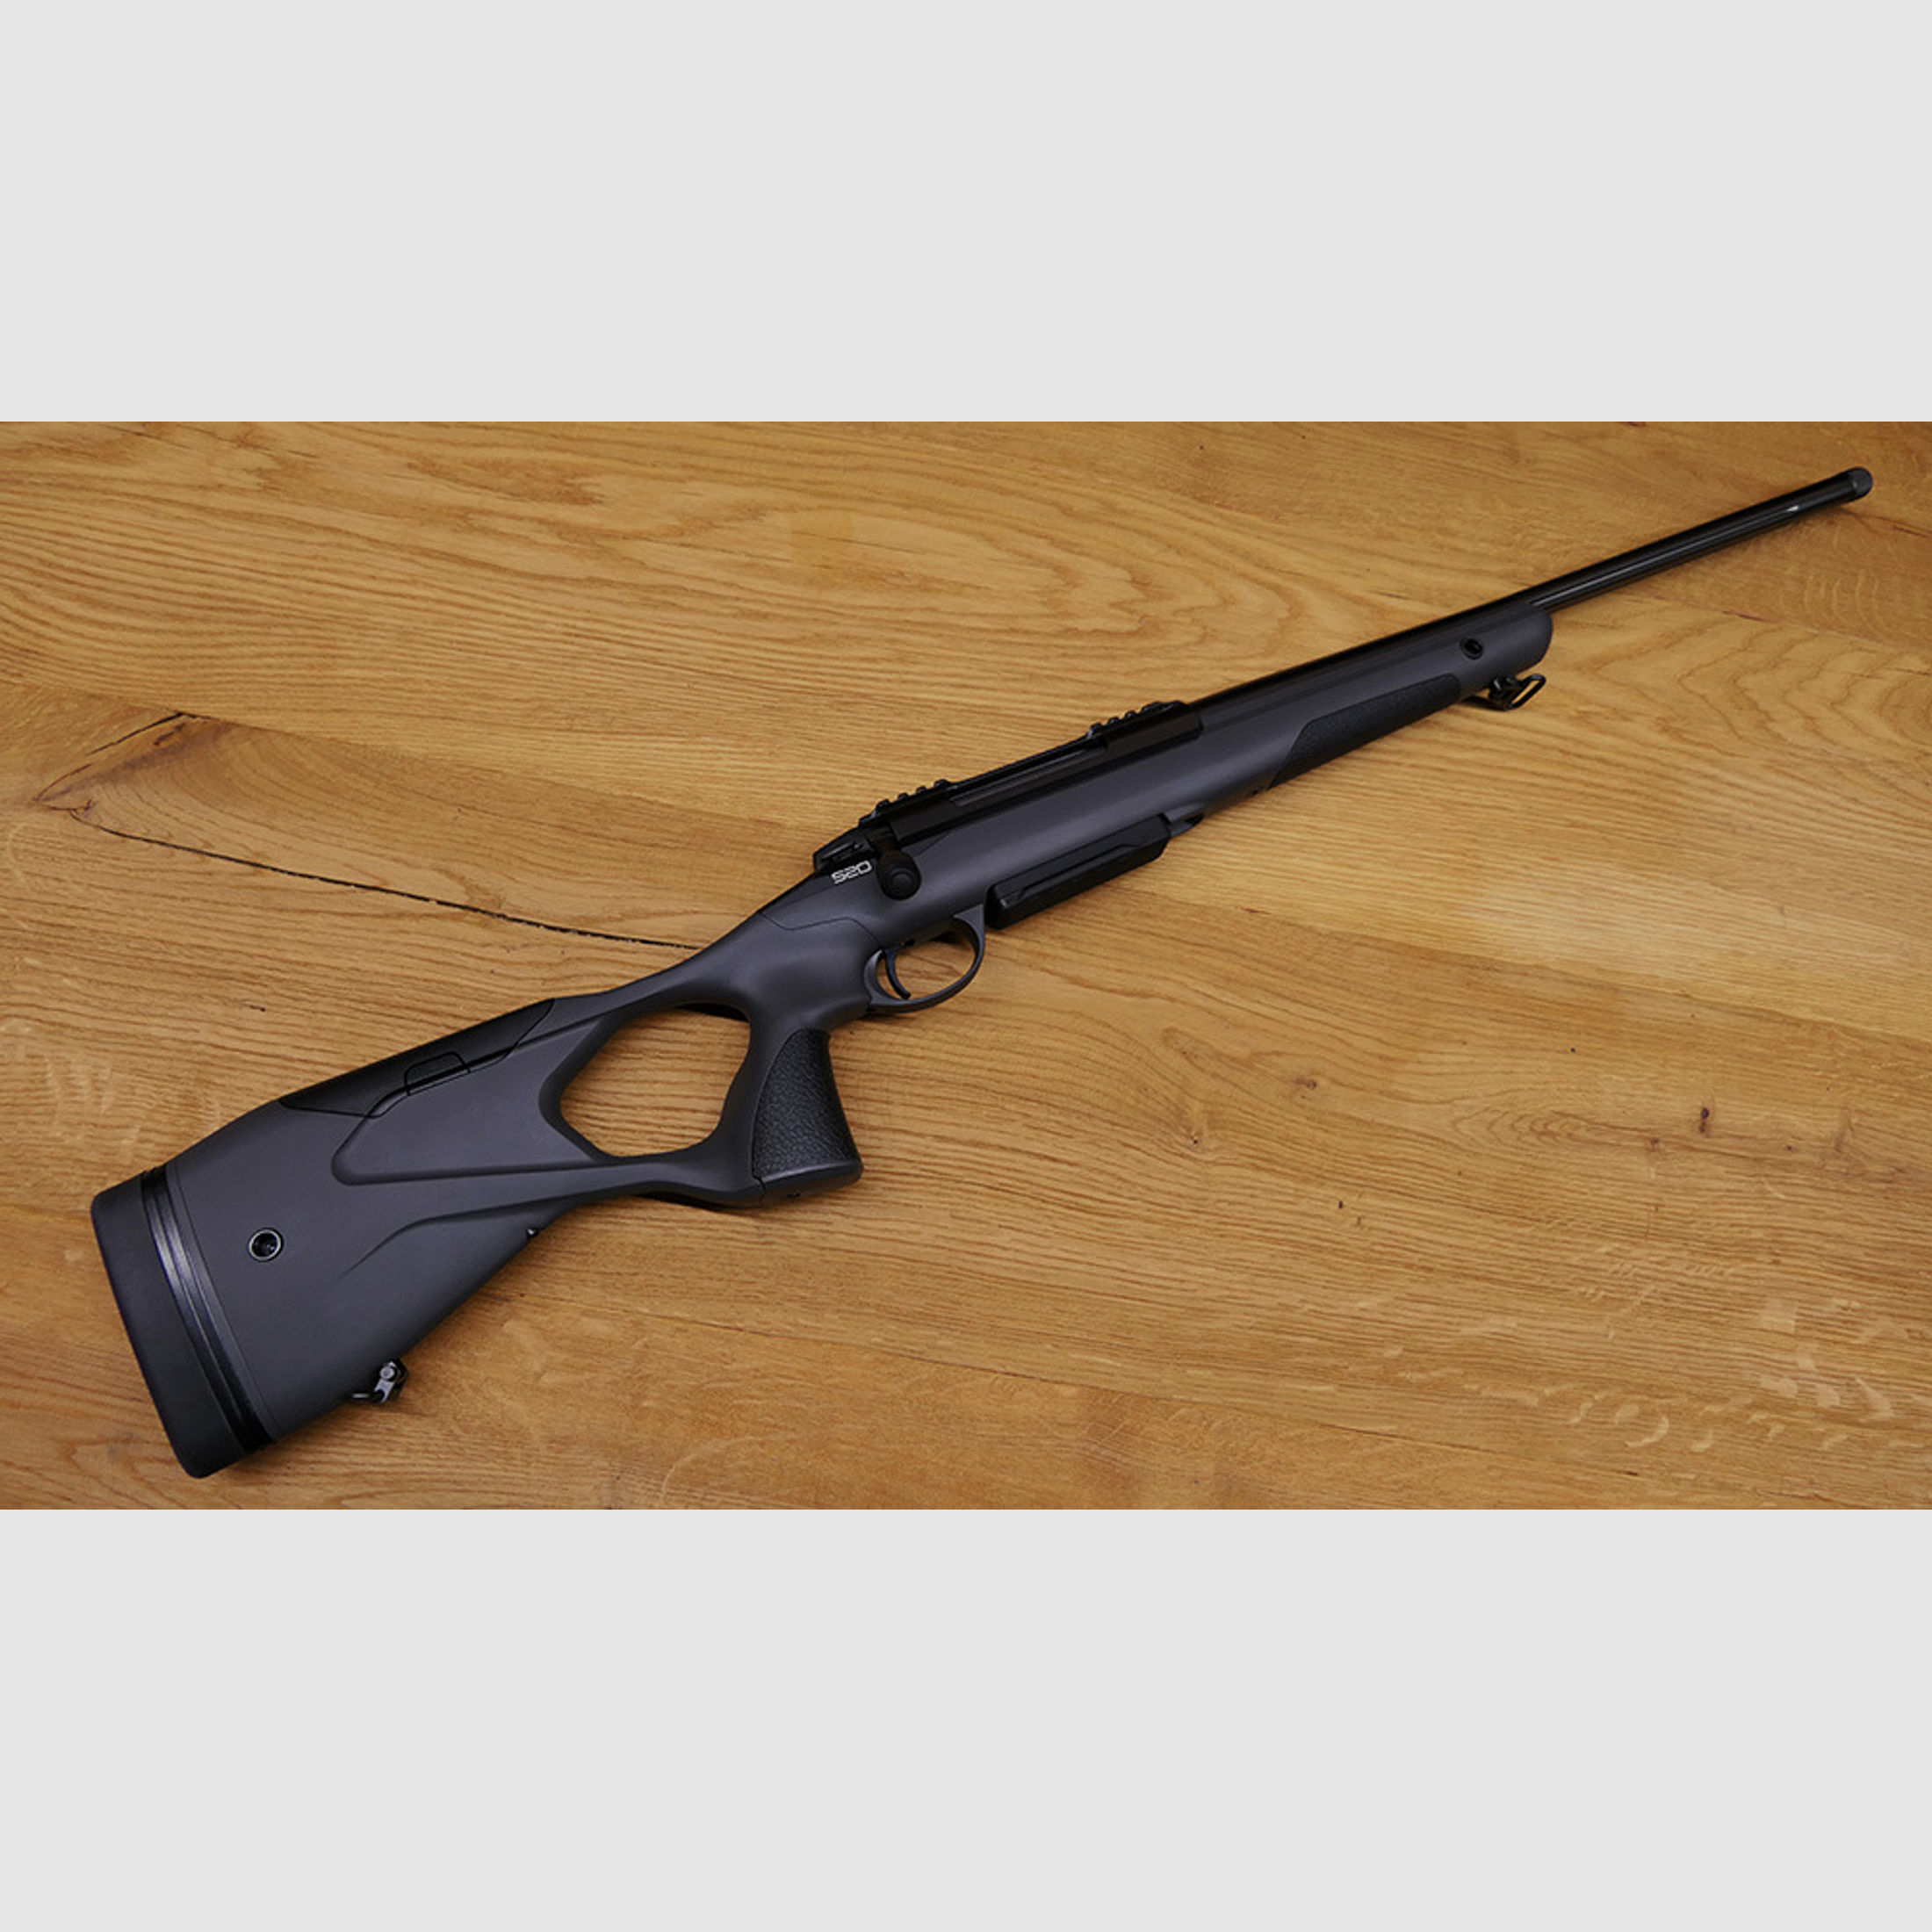 Sako S20 / Kaliber .308 Winchester / Gewinde 5/8-24 / Lauflänge 51cm